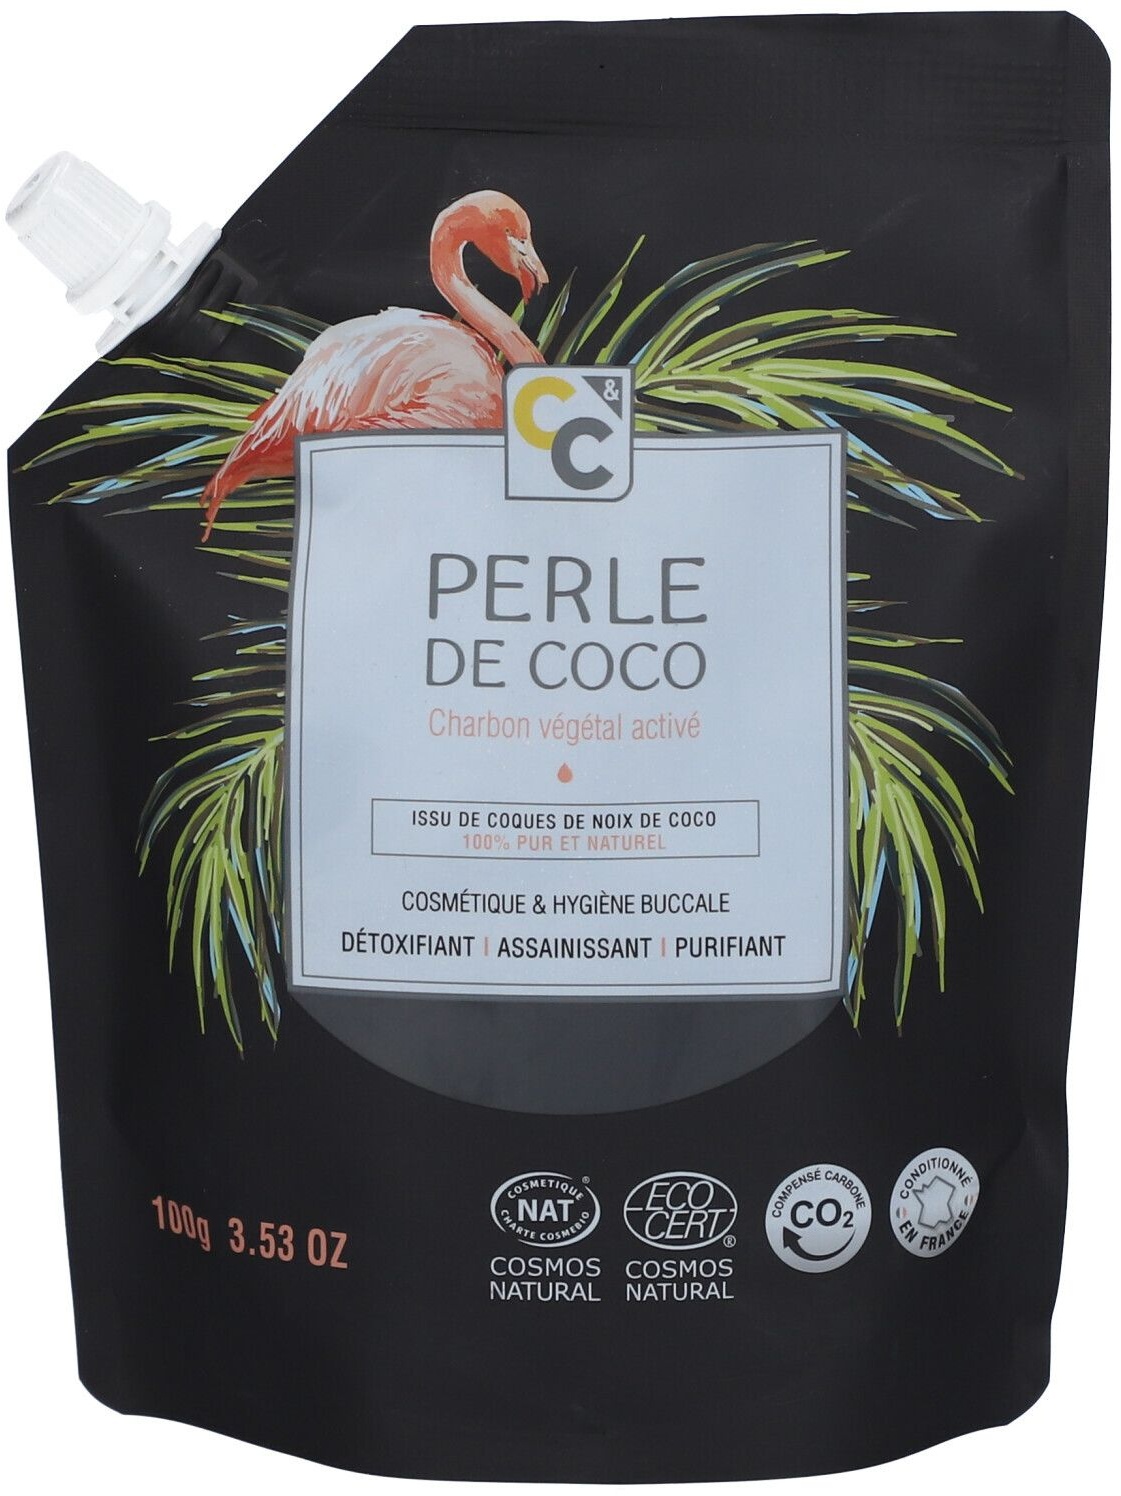 Comptoirs & Compagnies Perle de Coco Charbon végétal activé 100 g poudre